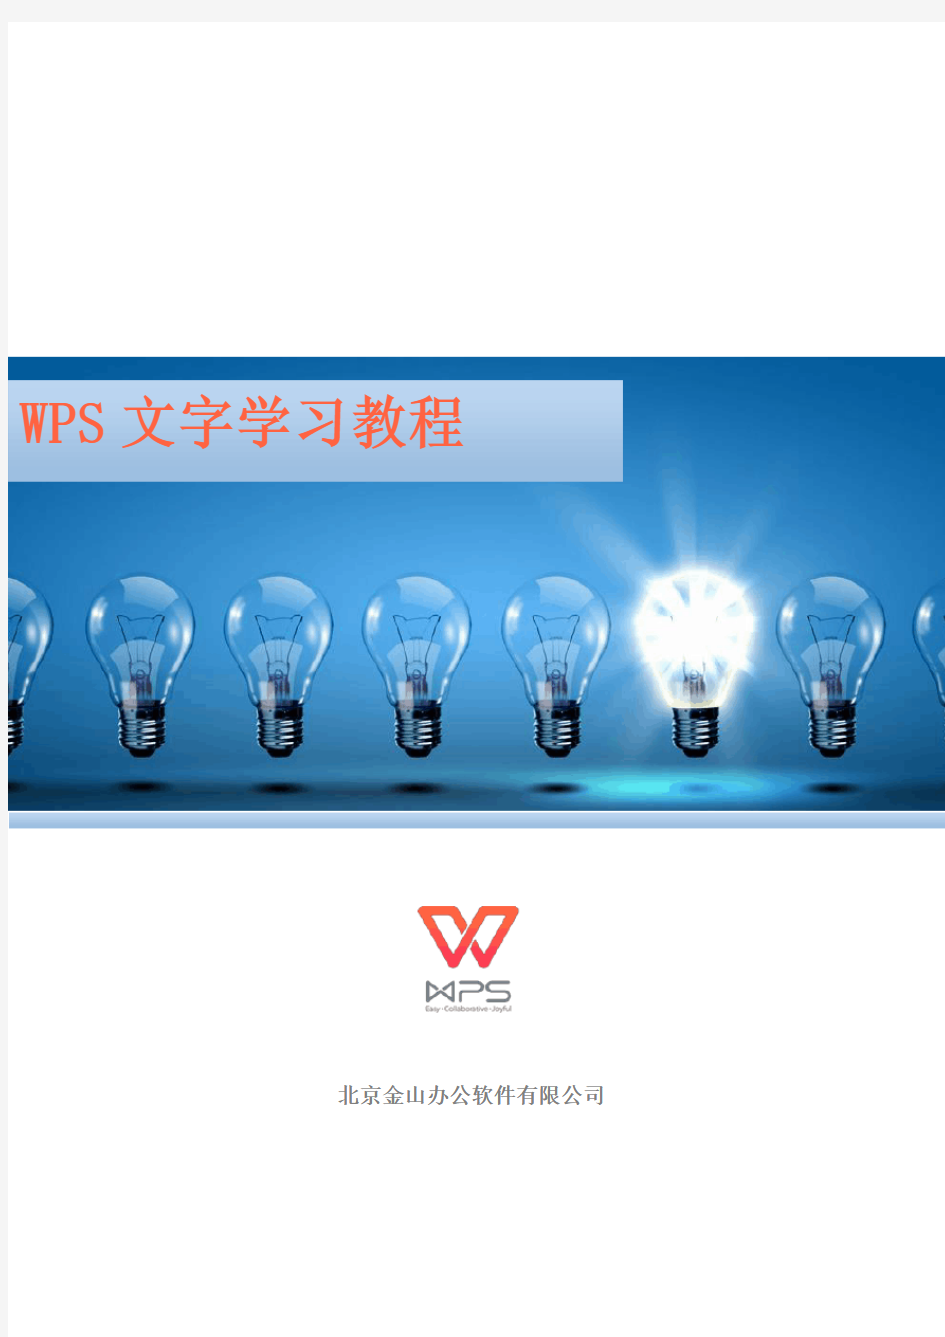 (完整word版)wps-文字学习教程